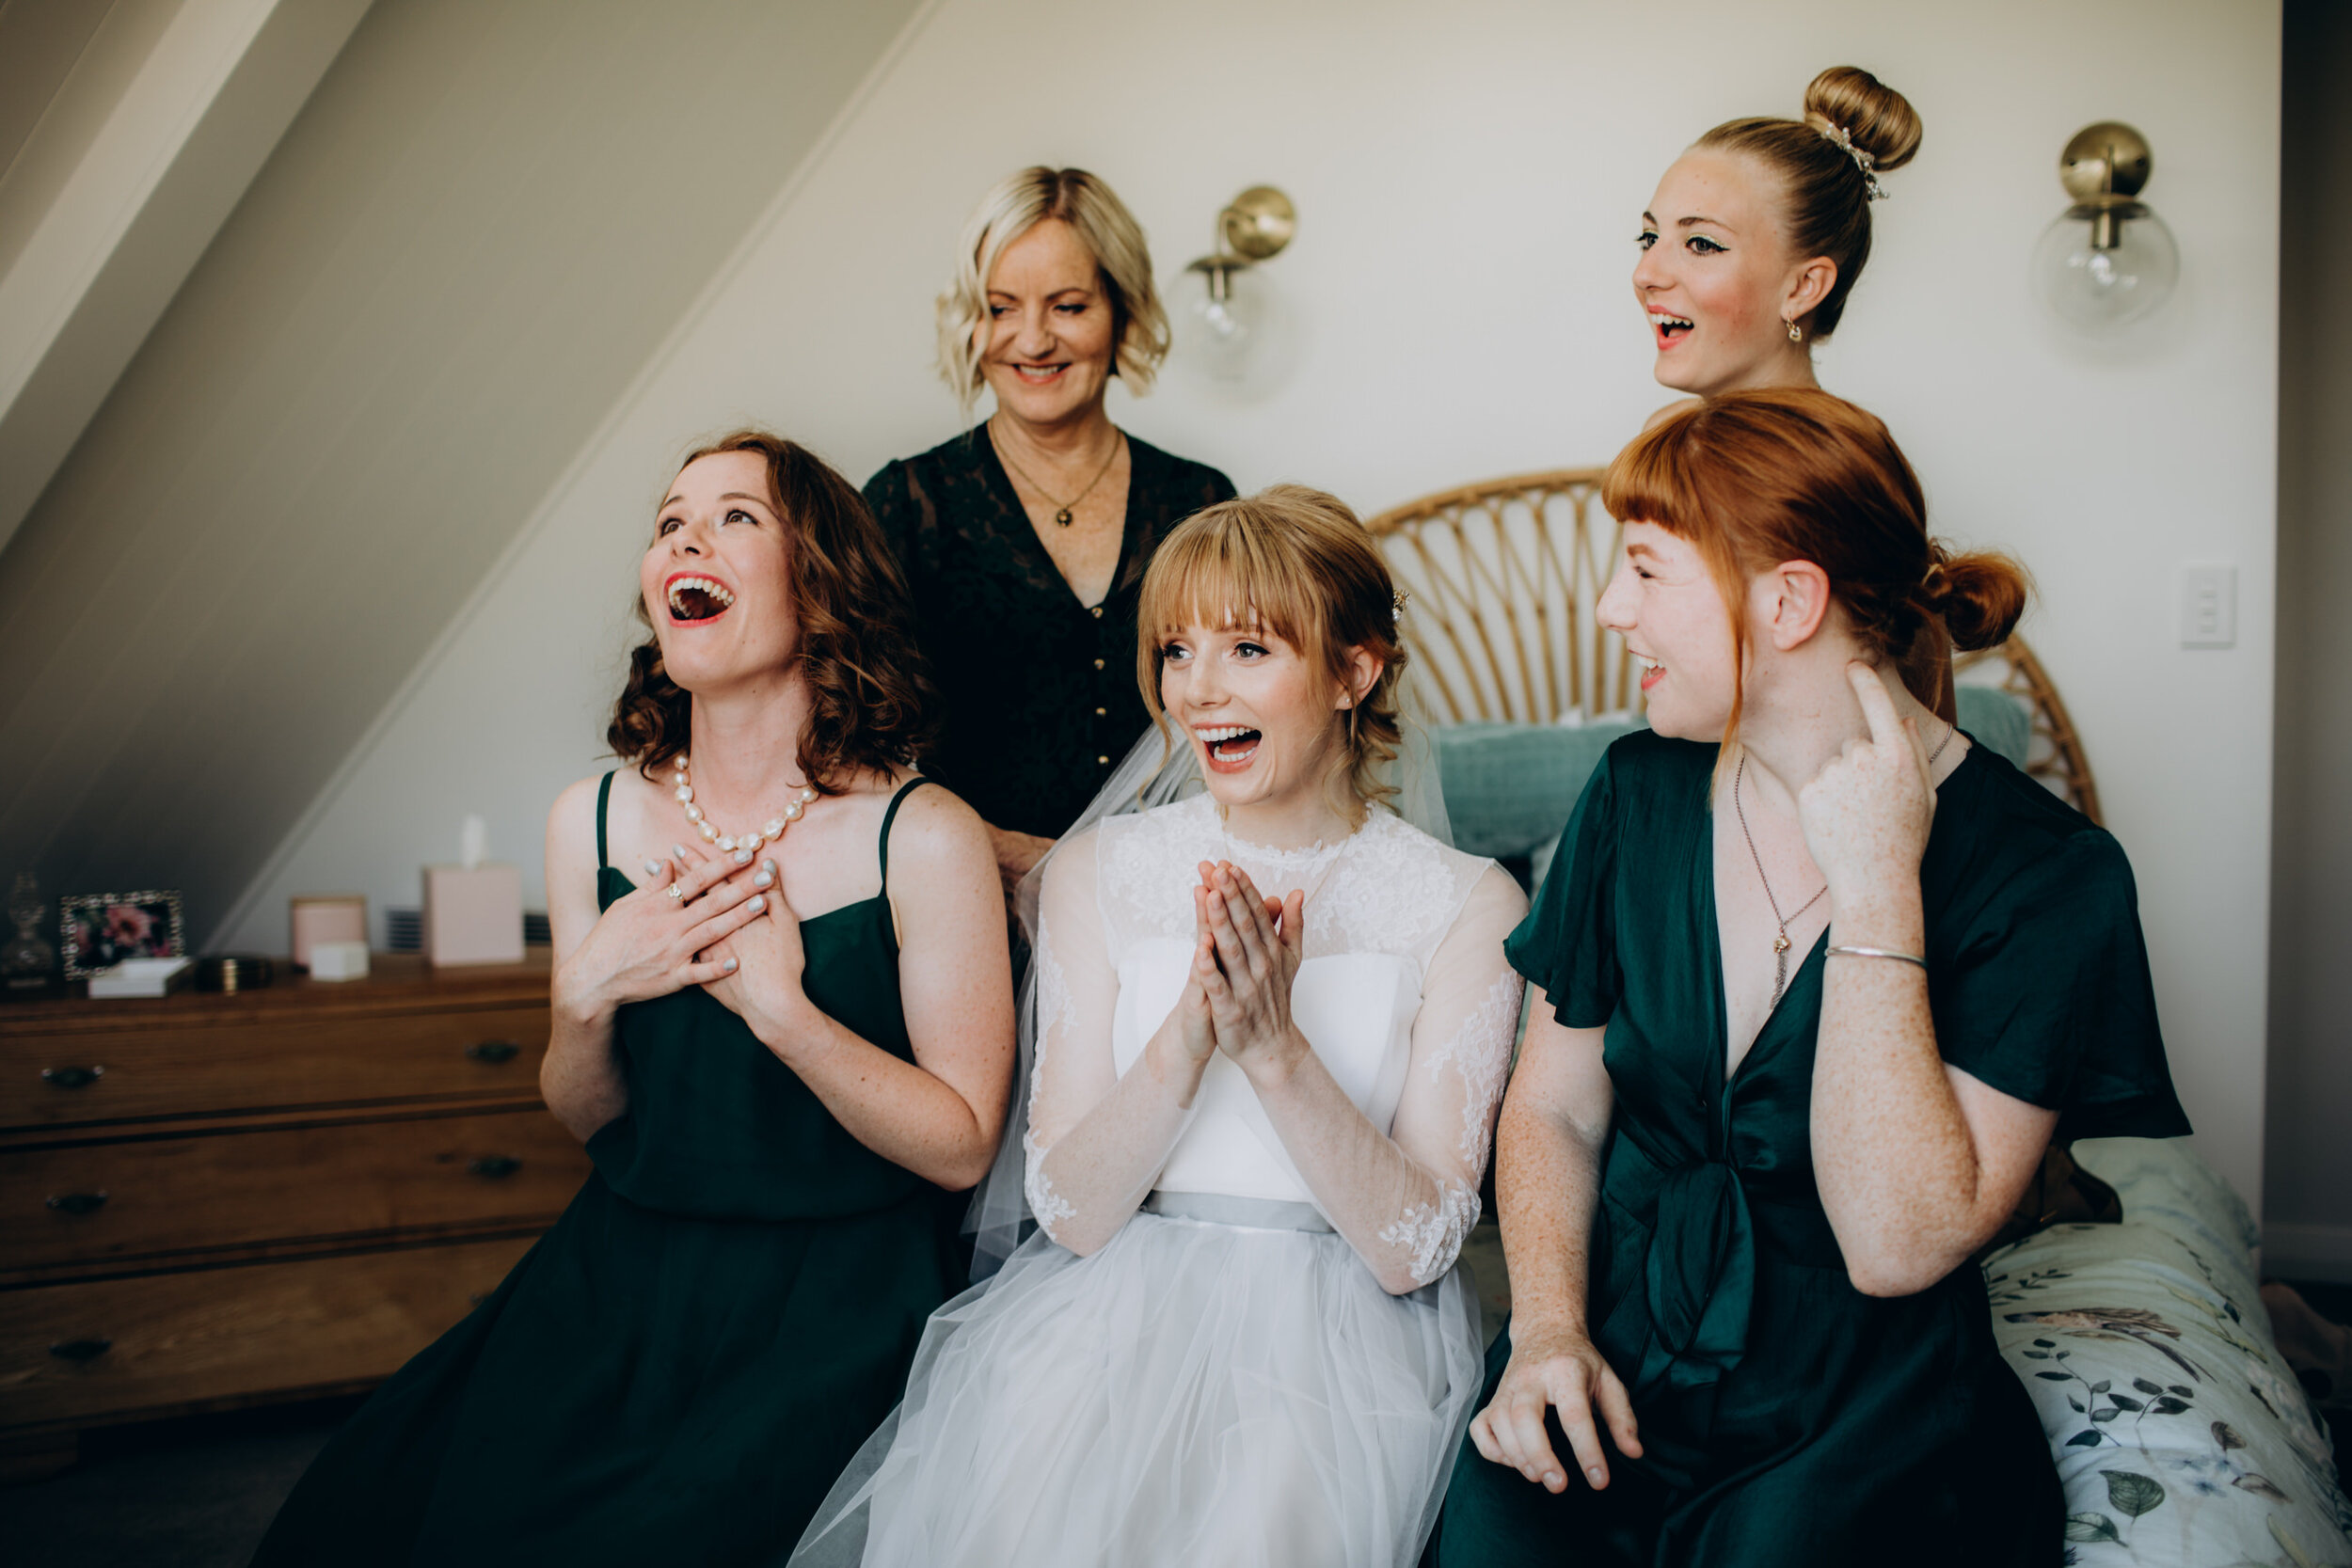 Zealand wedding photographer | Small intimate wedding 